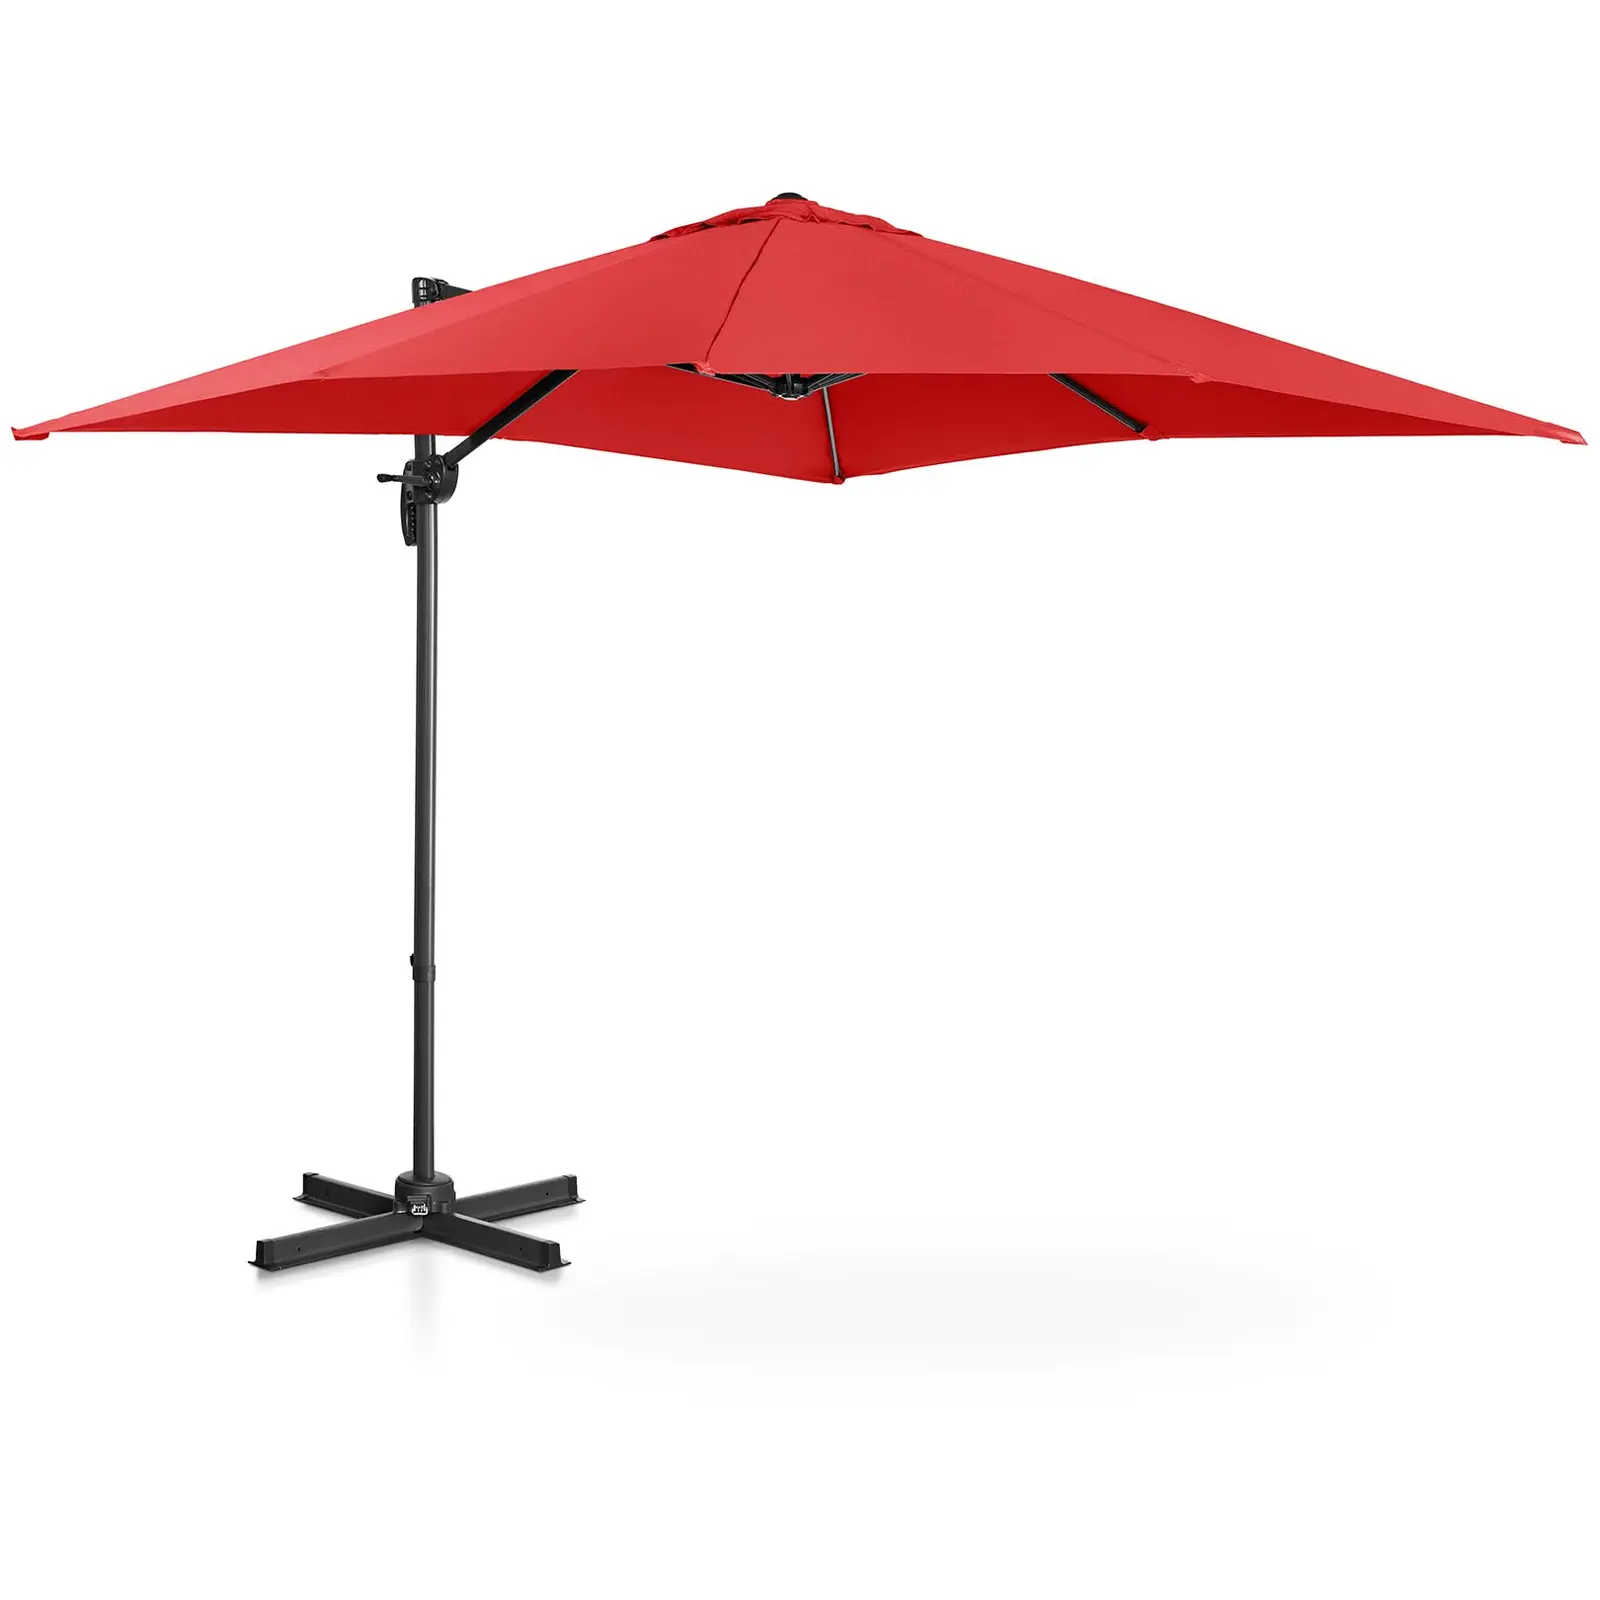 Parasol de jardin - Rouge - Carré - 250 x 250 cm - Pivotant - 1